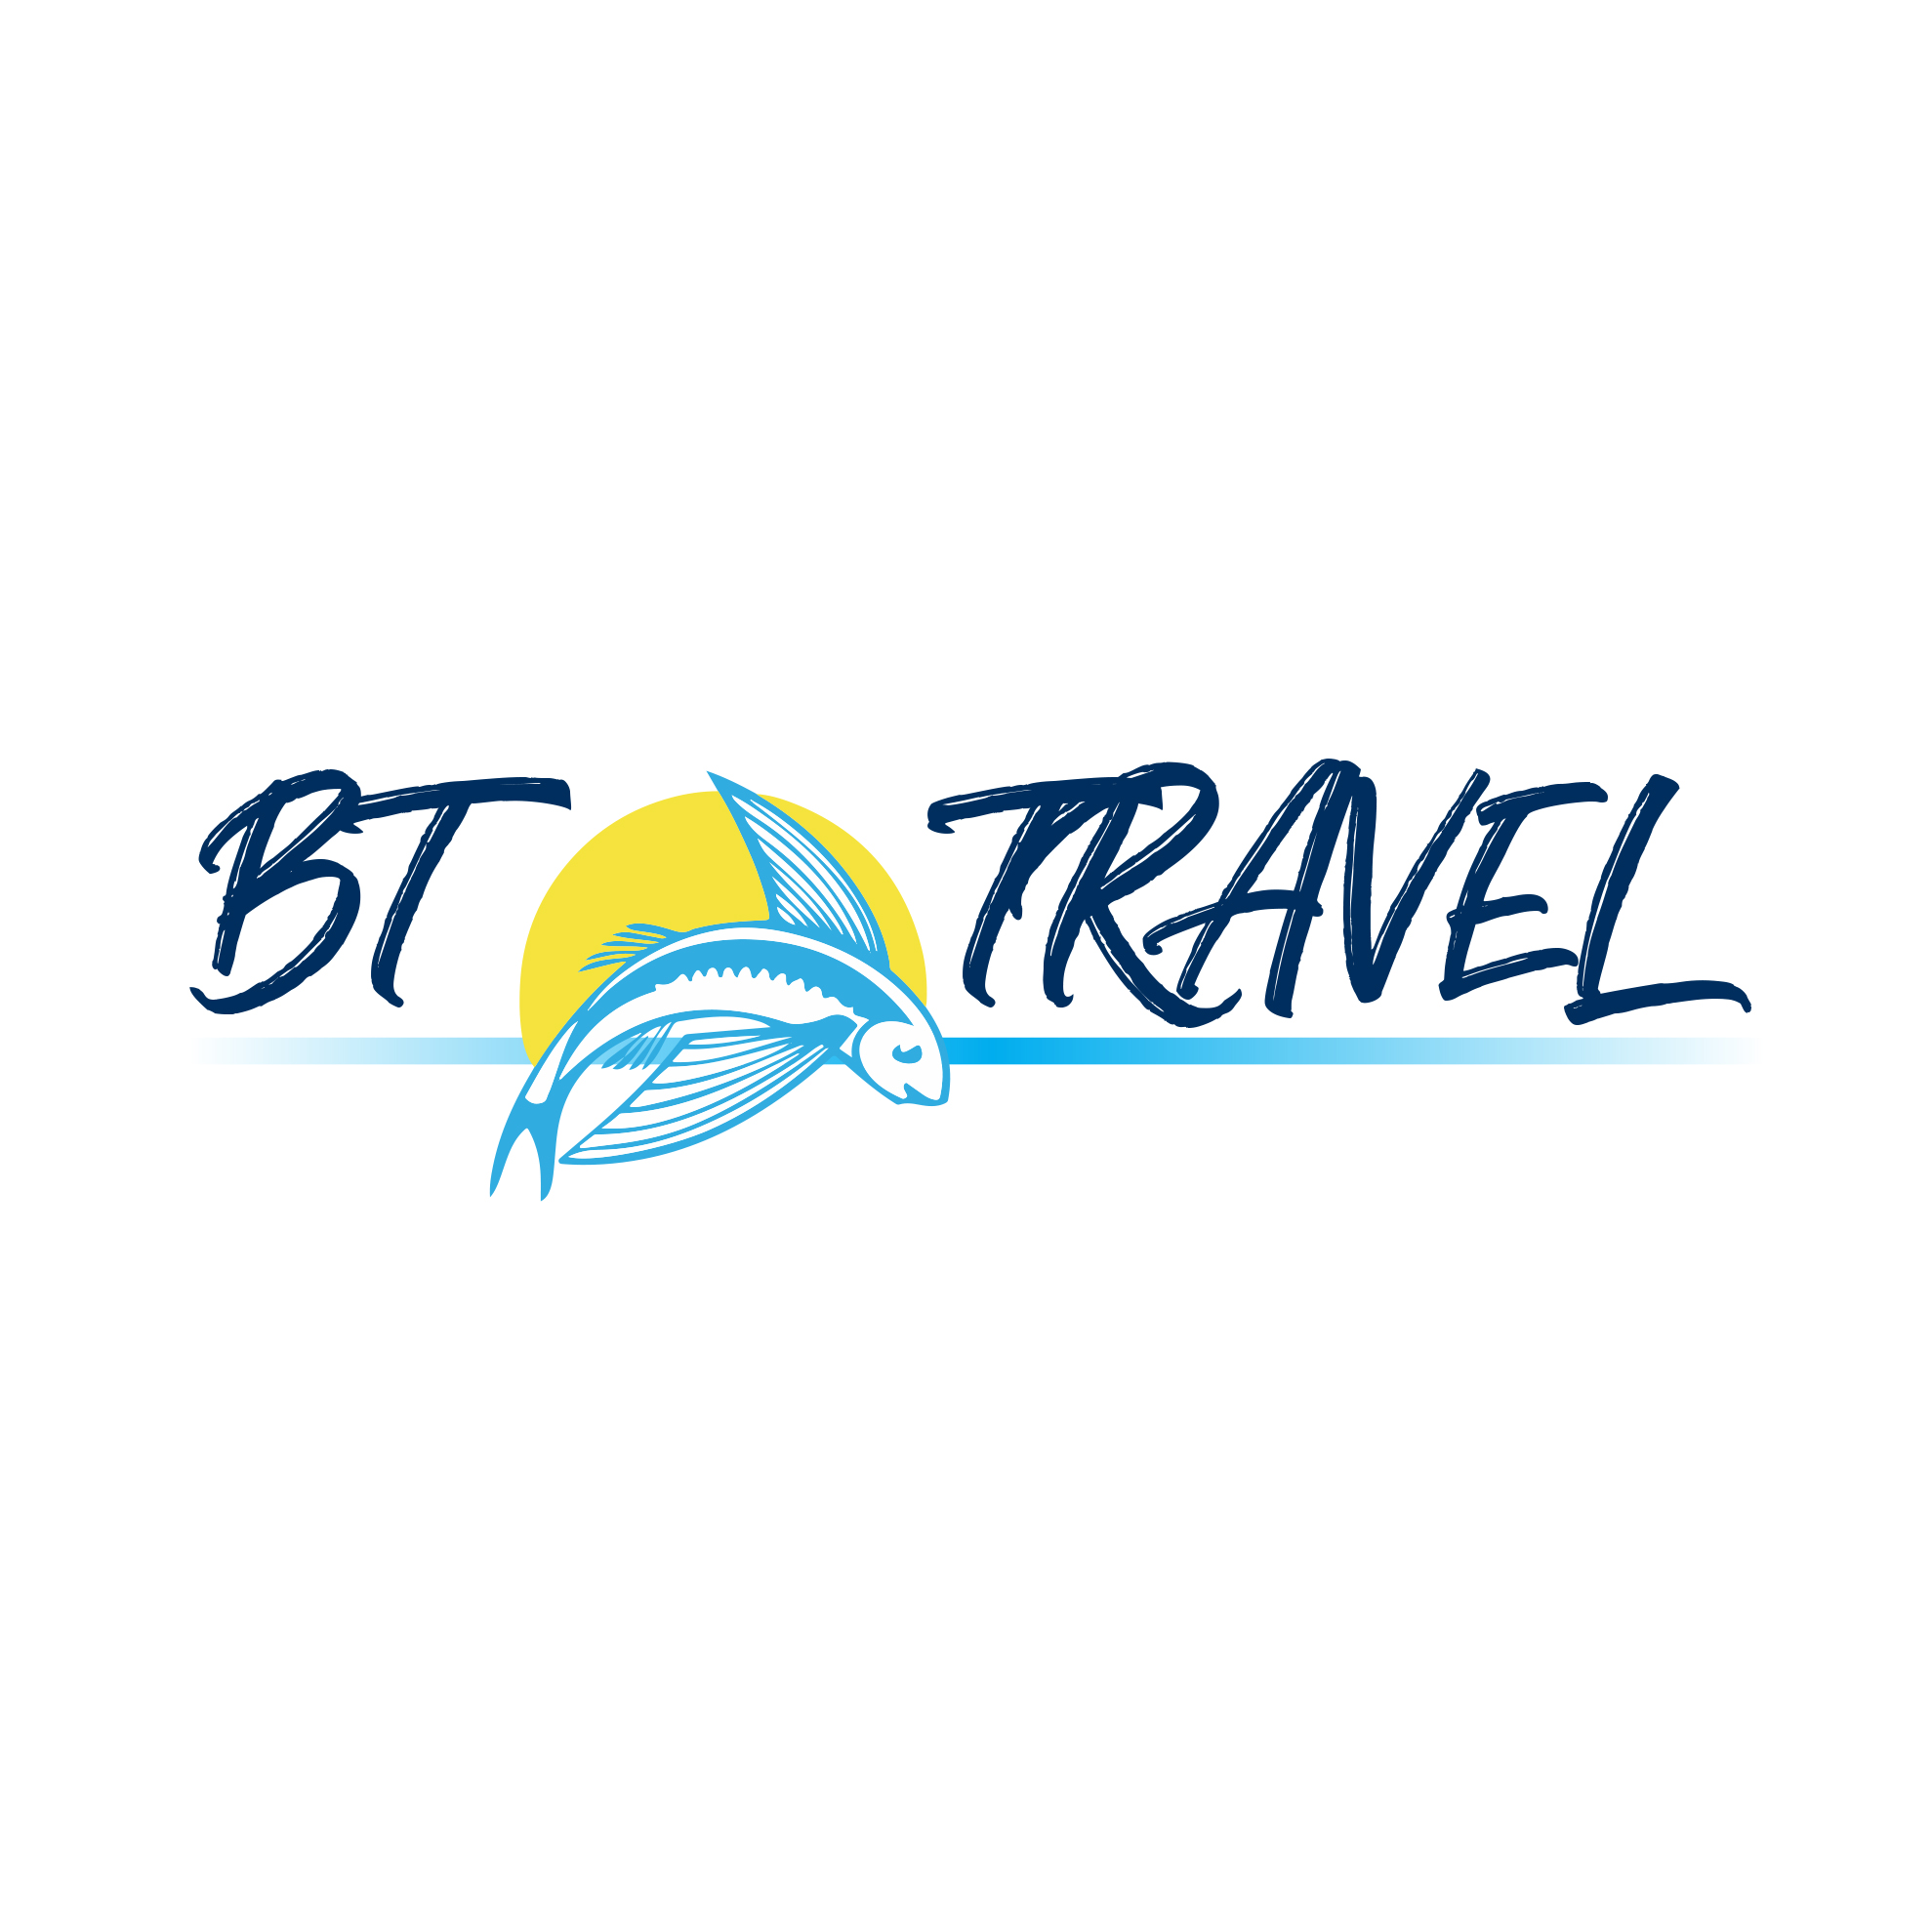 BT Travel